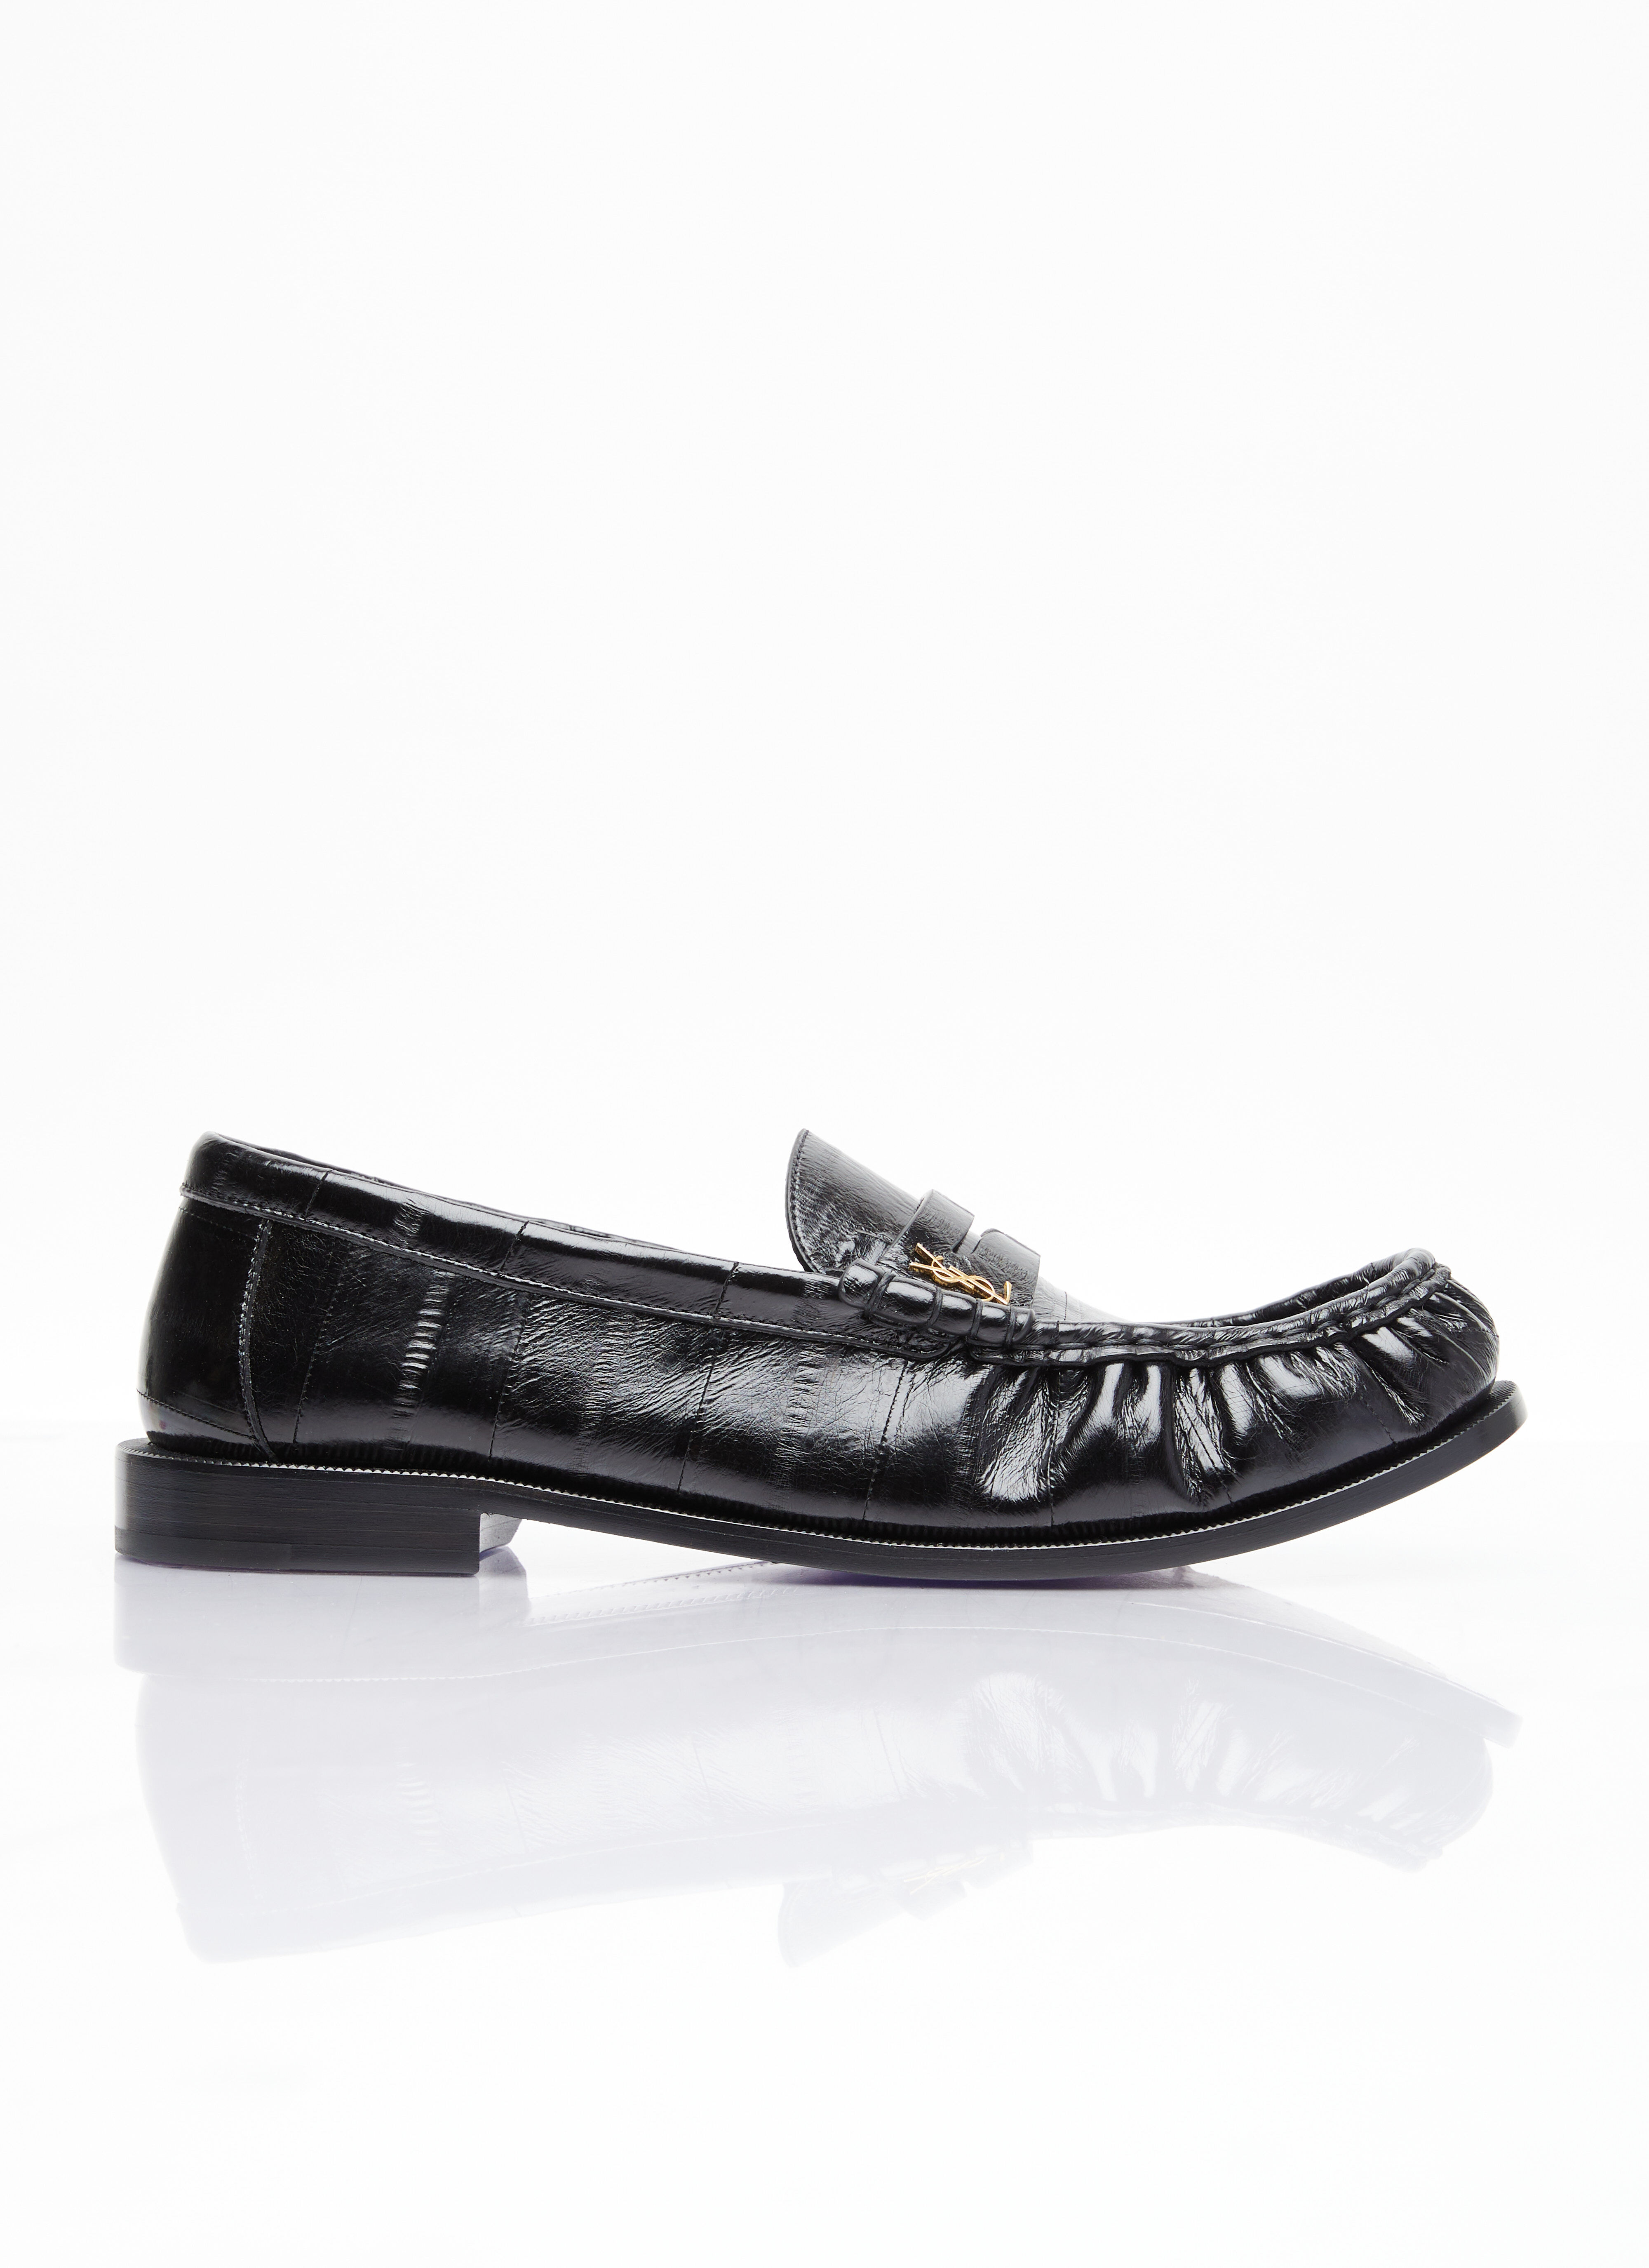 Gucci Le Loafer 便士乐福鞋 黑色 guc0255061